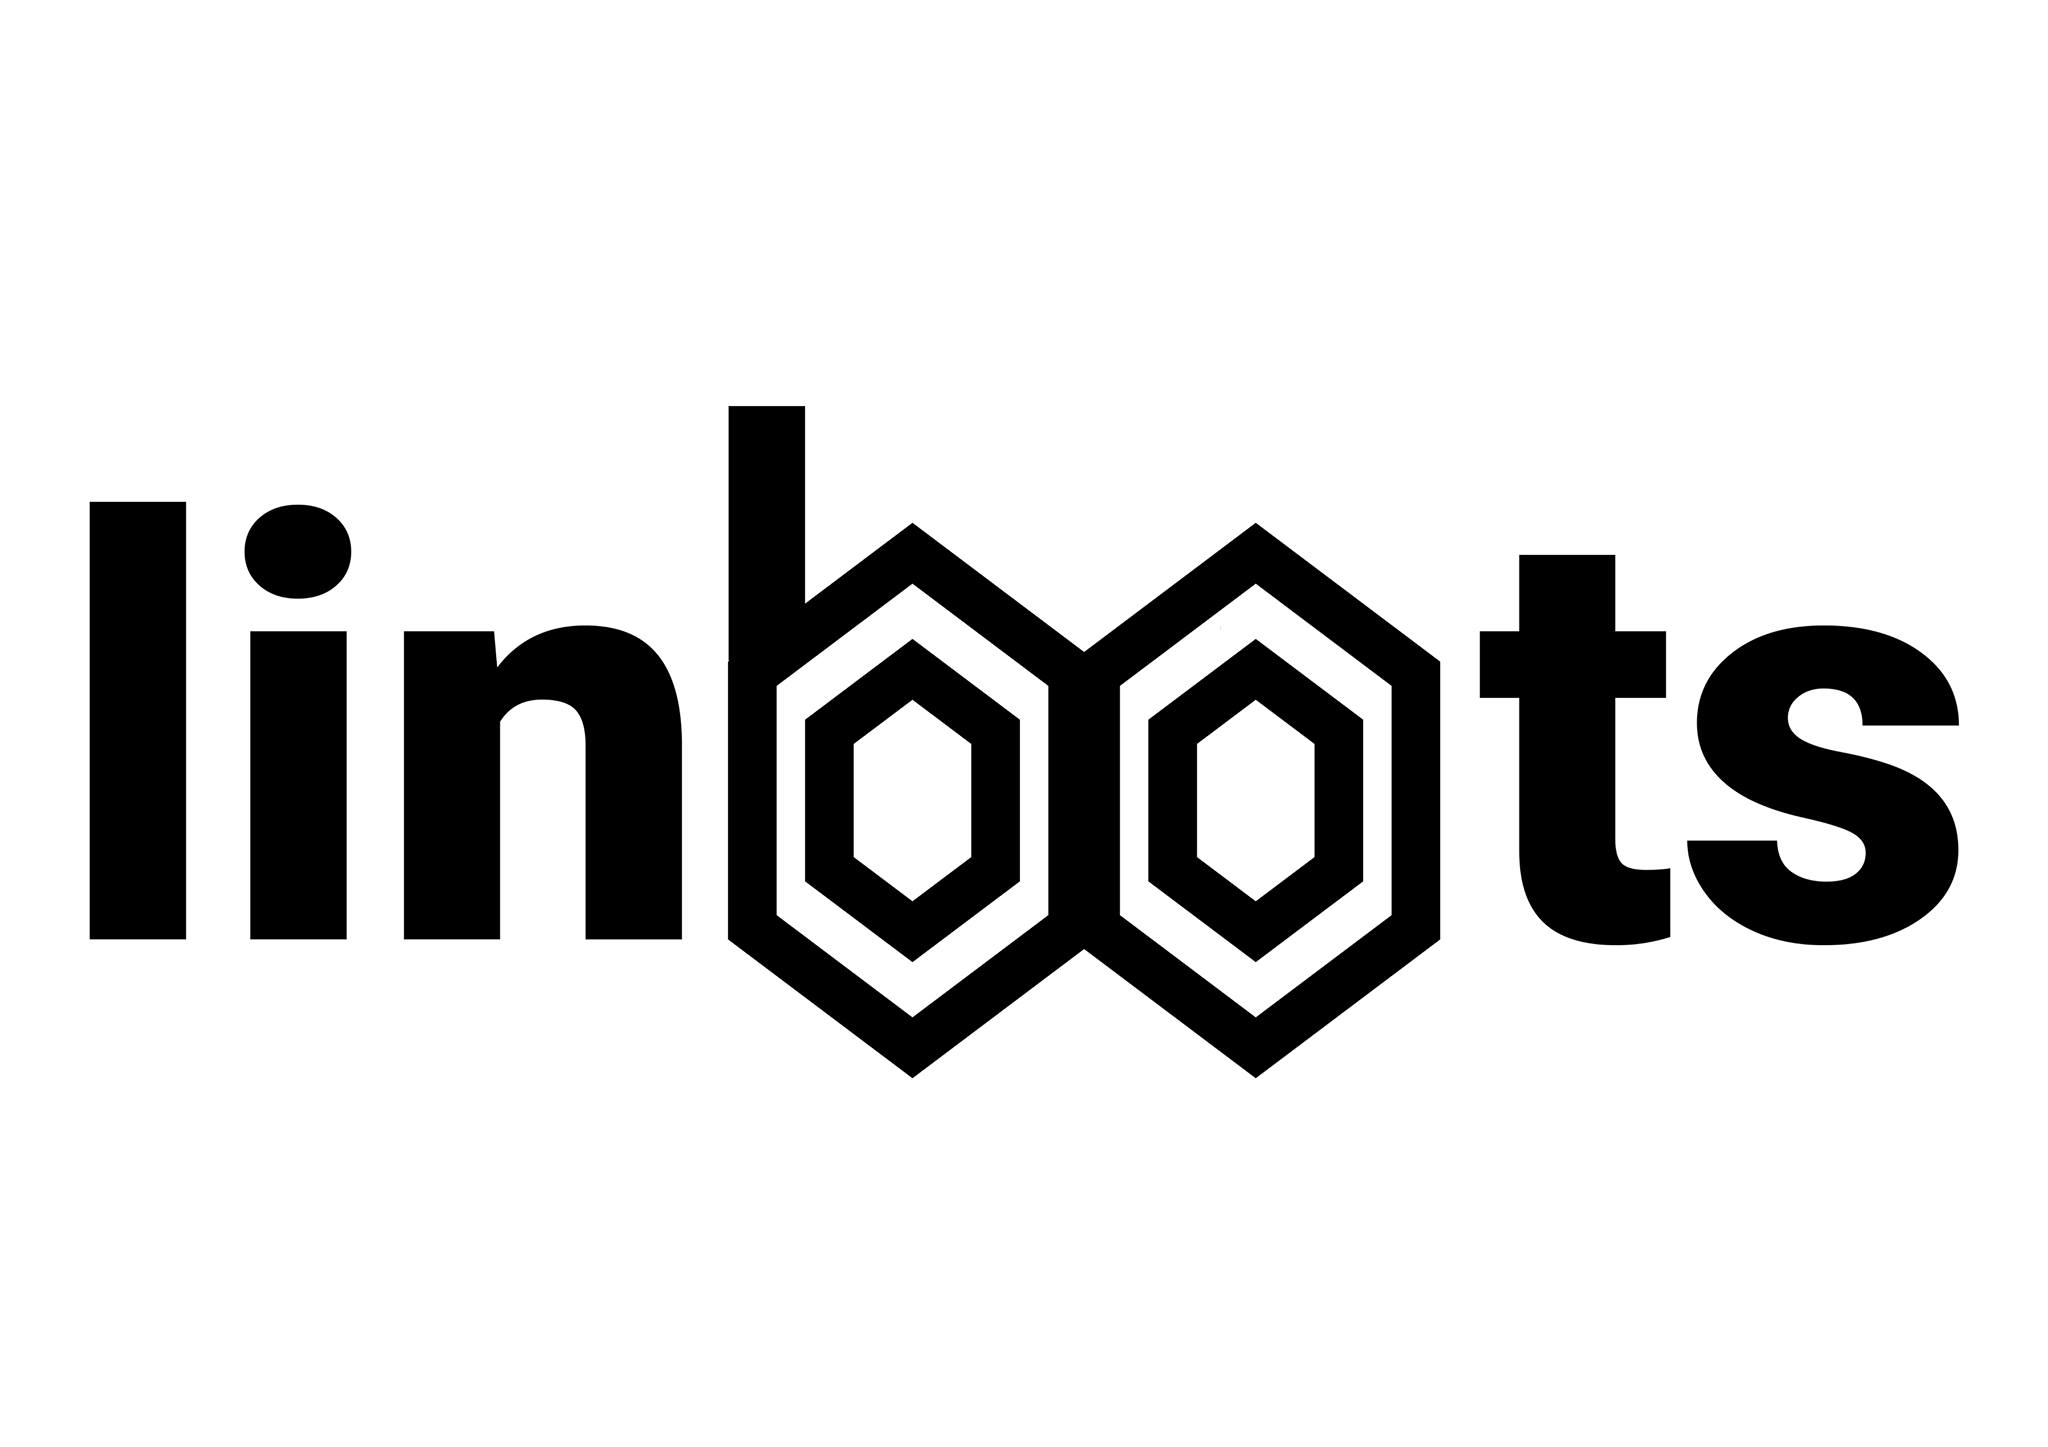 Linbots logo